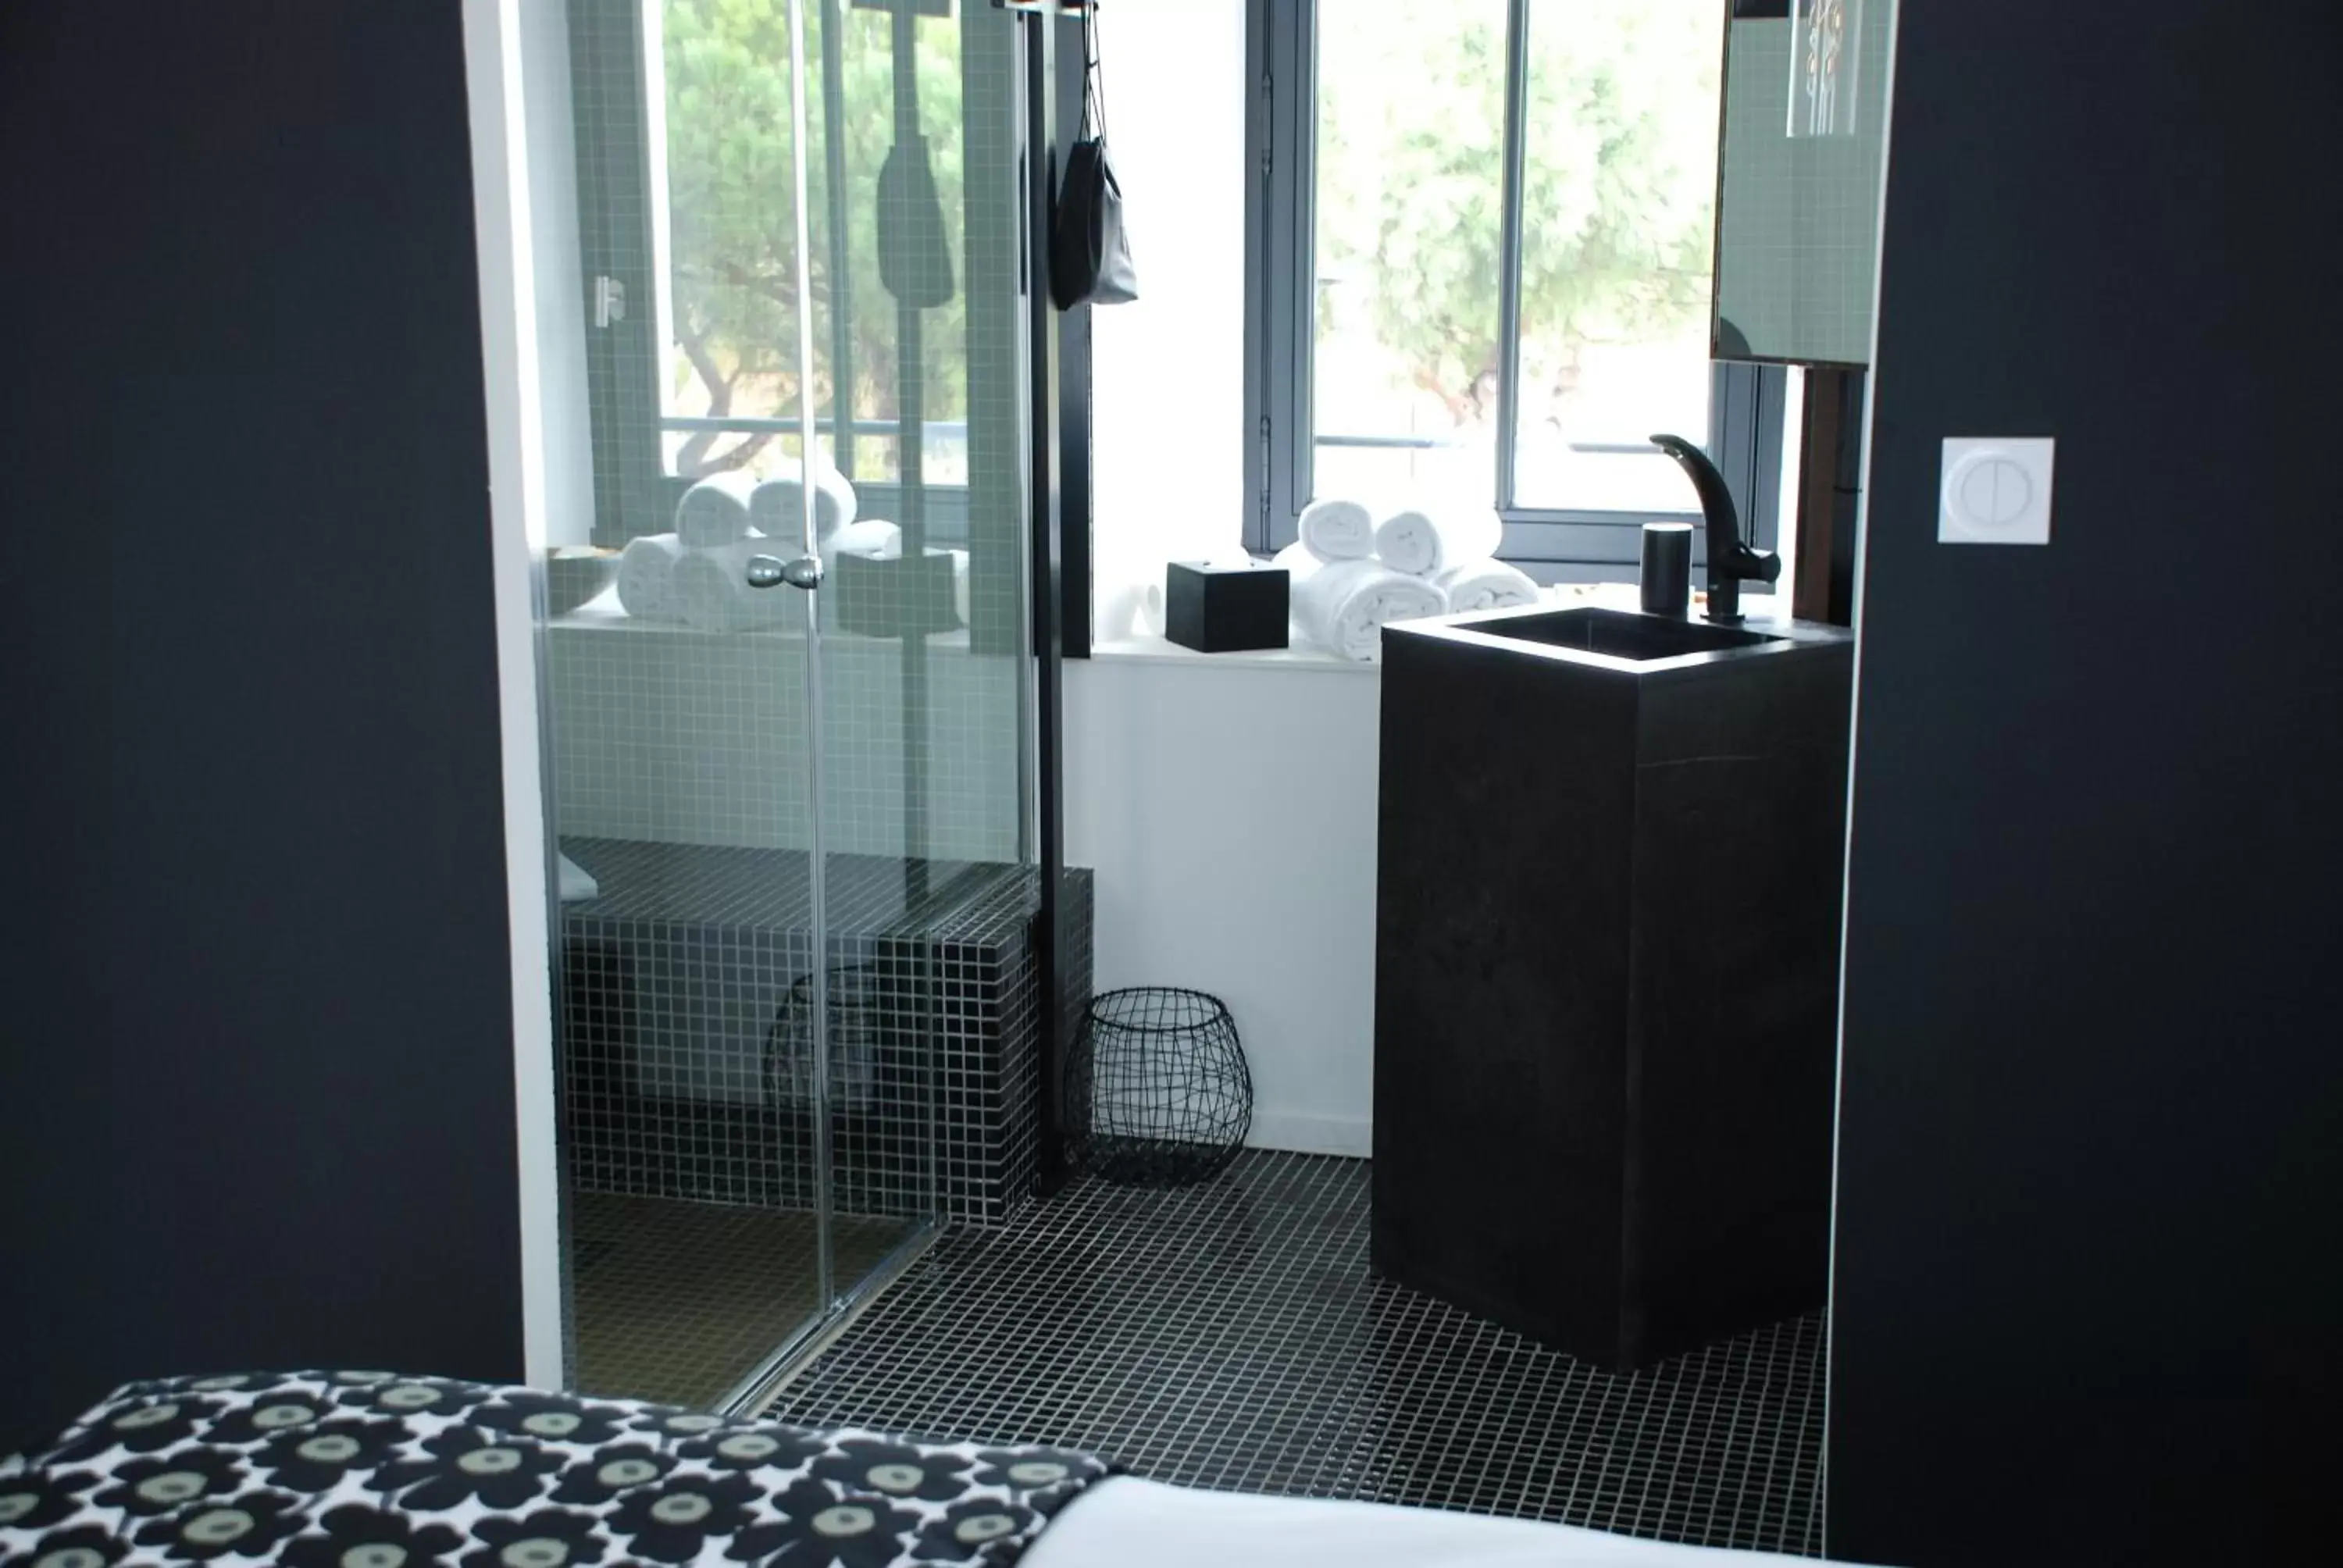 Bathroom in Hotel Pont Levis - Franck Putelat